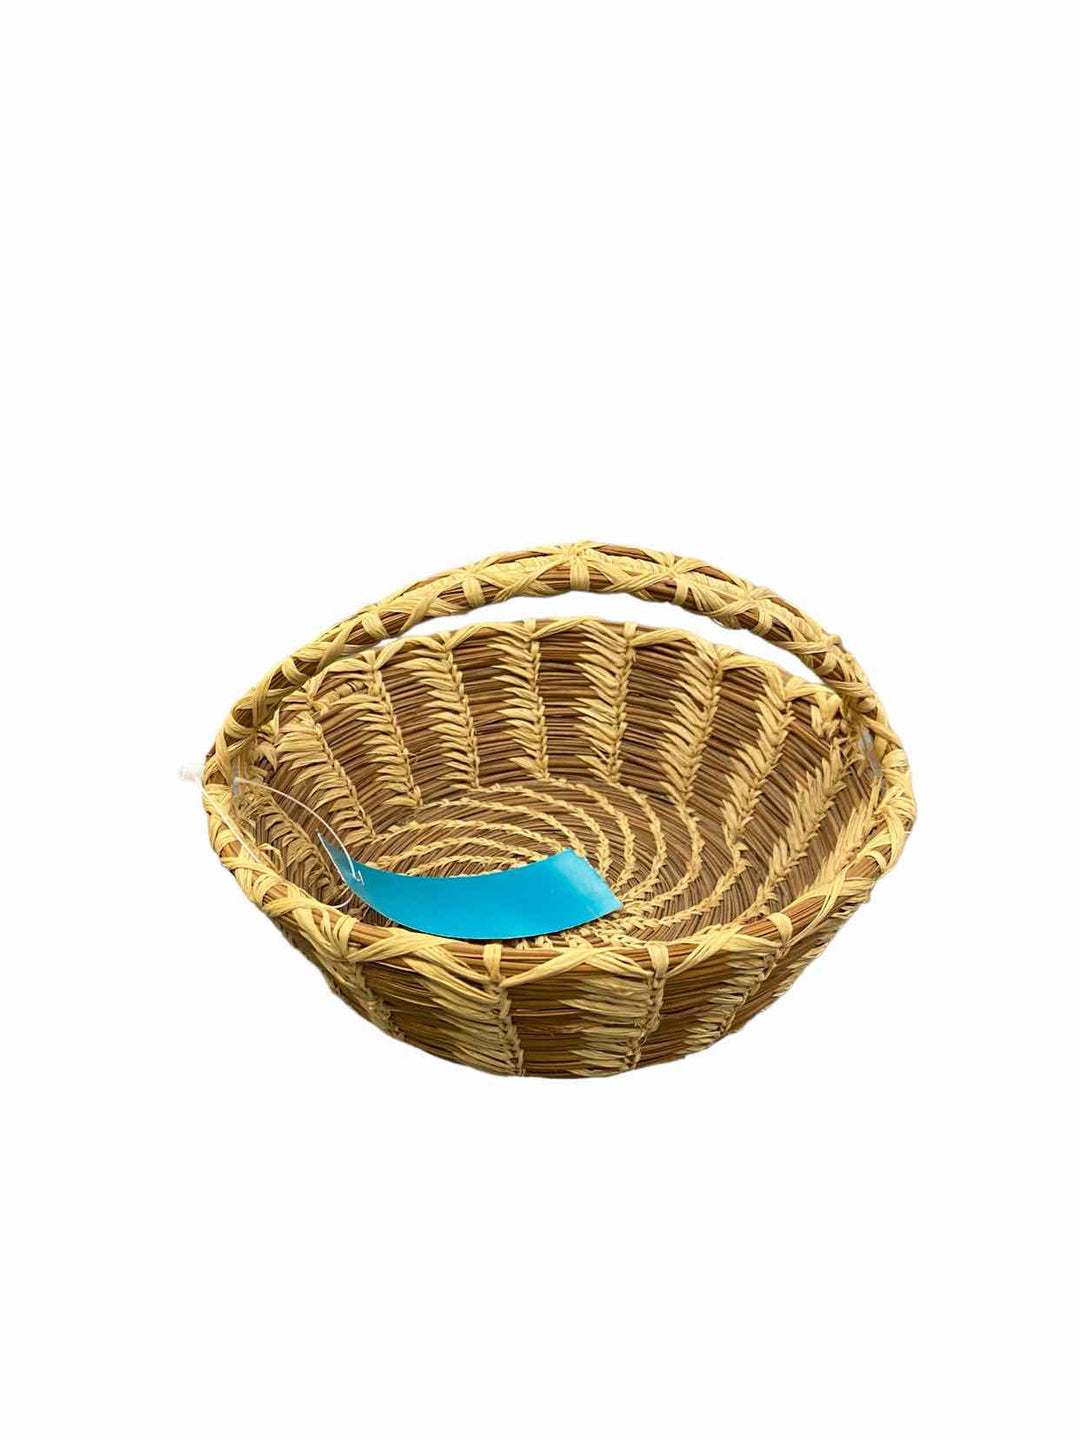 Basket Home Decor